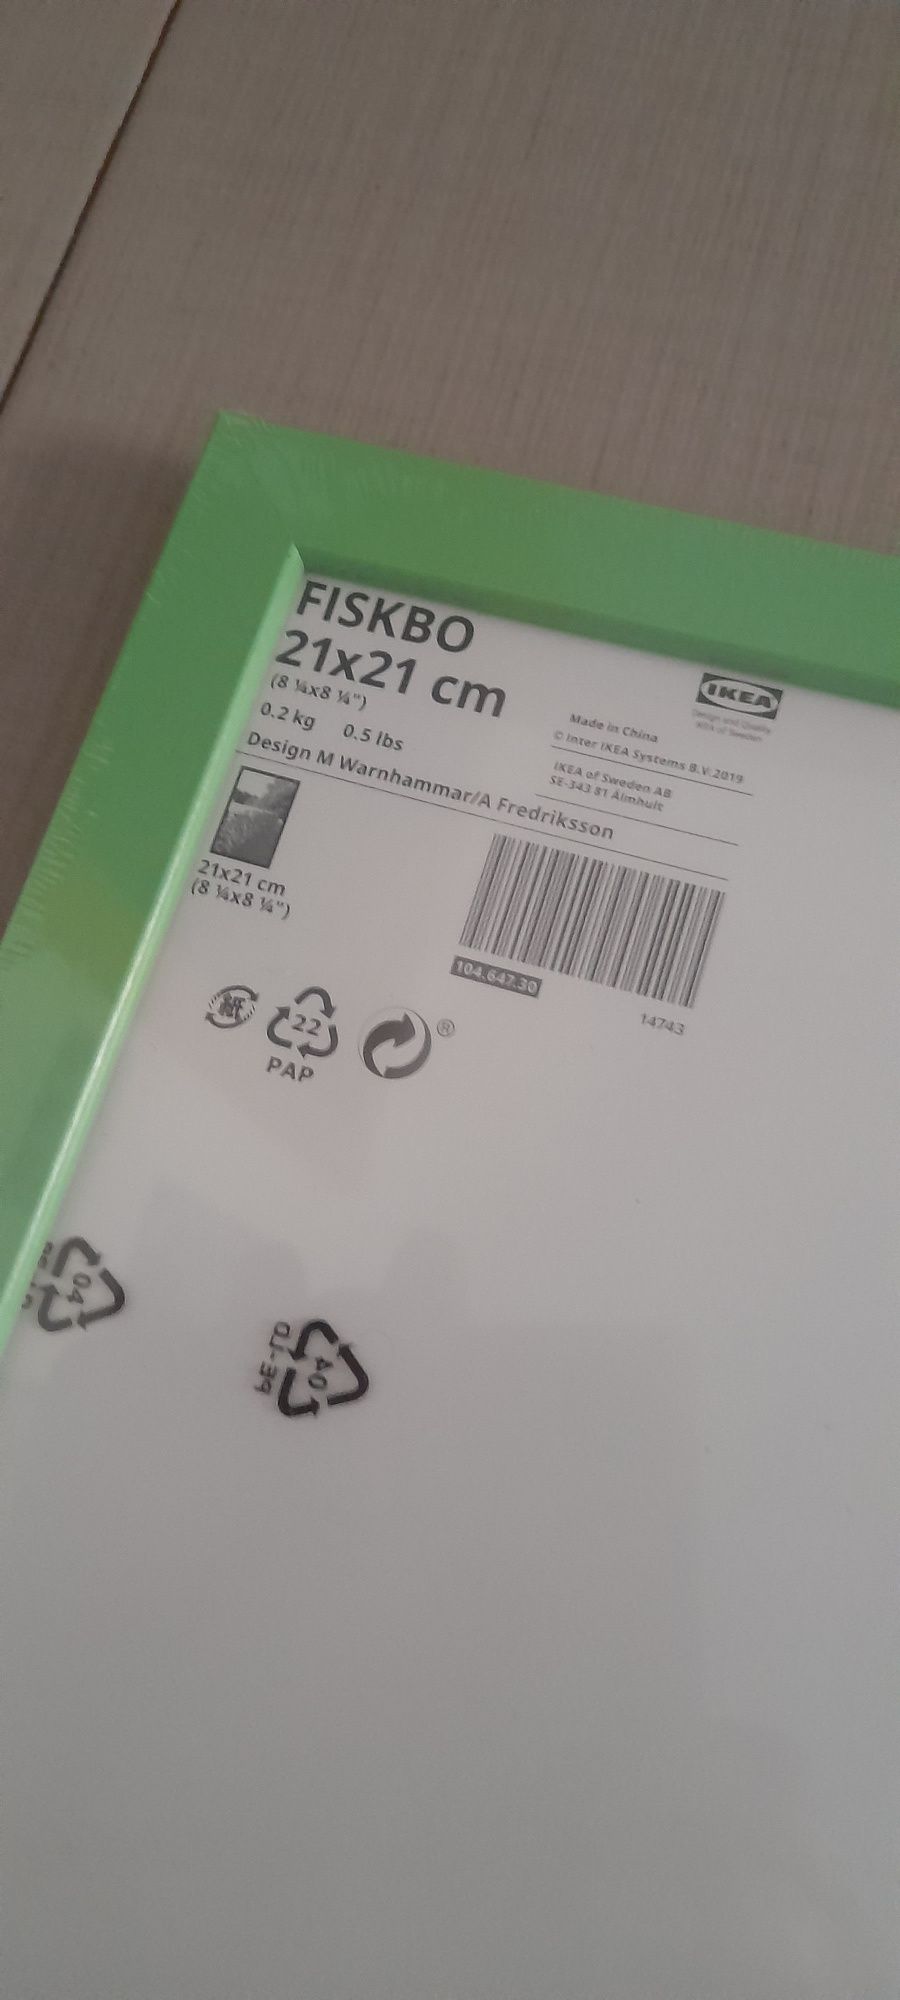 Molduras FISKBO 21X21CM do IKEA.